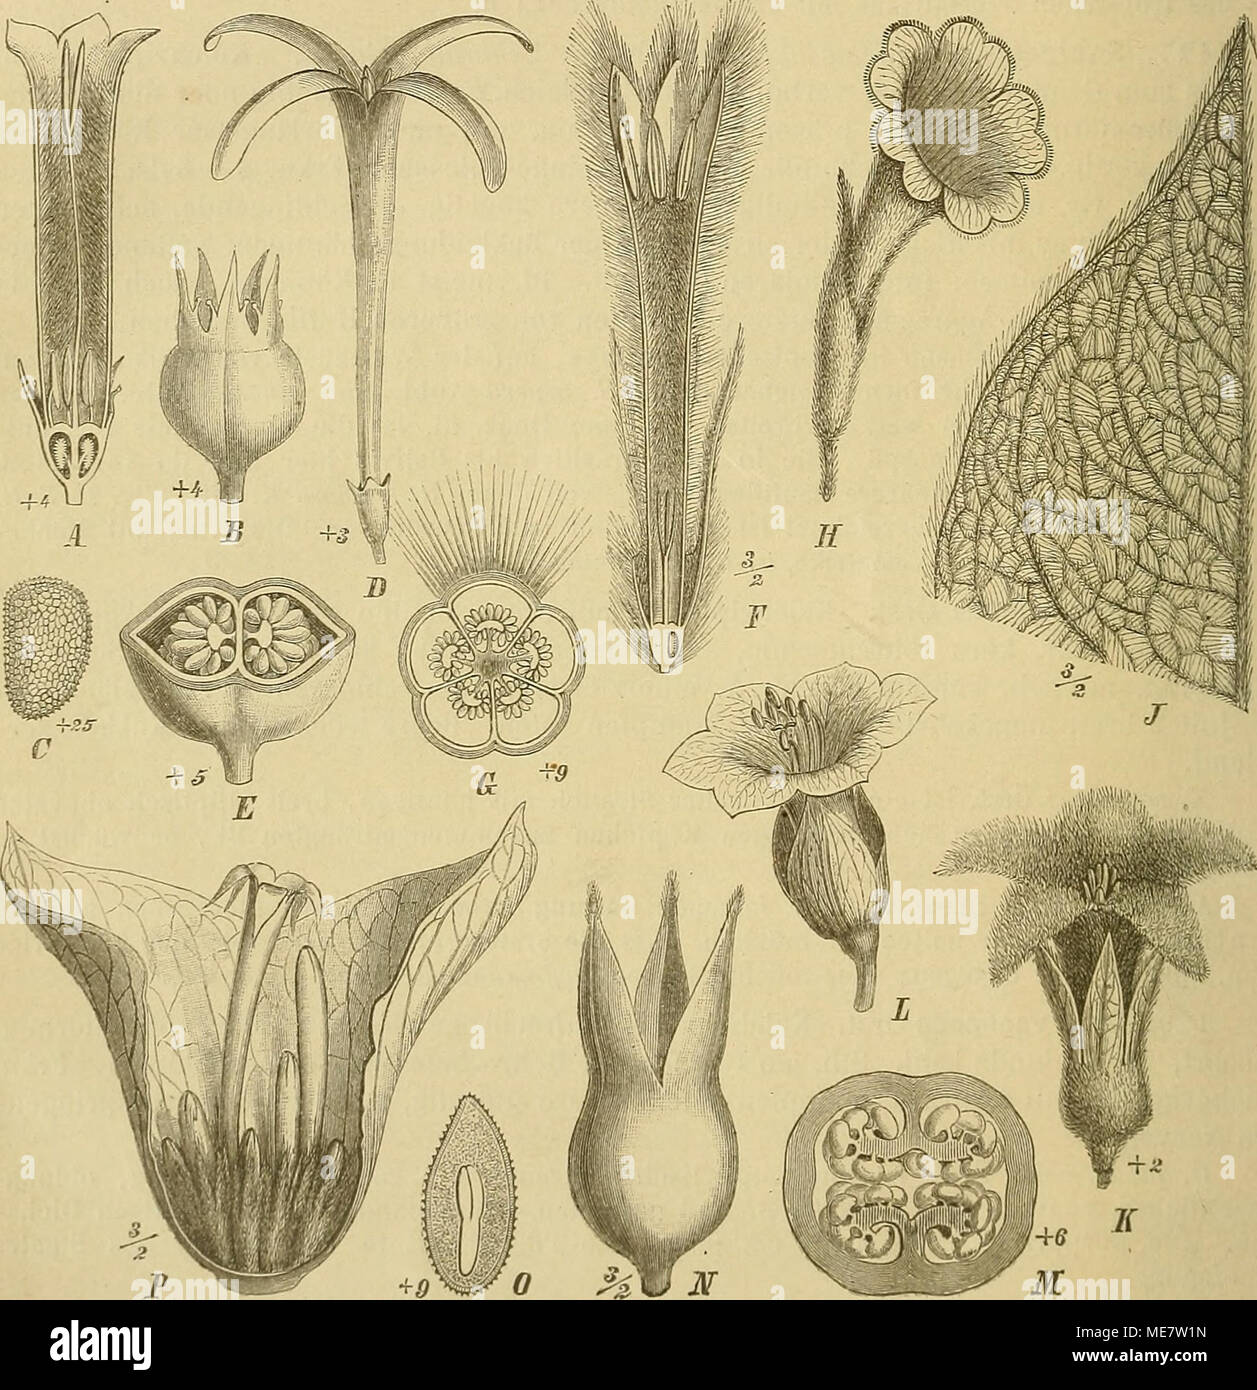 . Die Natürlichen Pflanzenfamilien : nebst ihren Gattungen und wichtigeren Arten, insbesondere den Nutzpflanzen . Fig. 20. A—C Mycetia longiflora (Wall.) K. Seh. A Bl. im Längsschnitt; B Fr.: C t?. — D, E Gouldia terminalis (Hook, et Arn.) Hbd. 1) ßl.; B Fr. — F, 6 Sabicca speciosa K. Seh. F Bl. im Längsschnitt; G Frkn. im Quer- schnitt. — 11 Eijipolis albiflora Karst., Bl. — J, K Sommera arhorescens Schlecht. J B. mit Moiröostreifung; K Bl. — L—0 Tammsia anomala Karst, i Bl.; 3i Fr. im Querschnitt; N Fr.; 0 S. im Längsschnitt. — P Stipu- laria ellipiica Schwfth., Blütenstand, vorderer Teil de Stock Photo